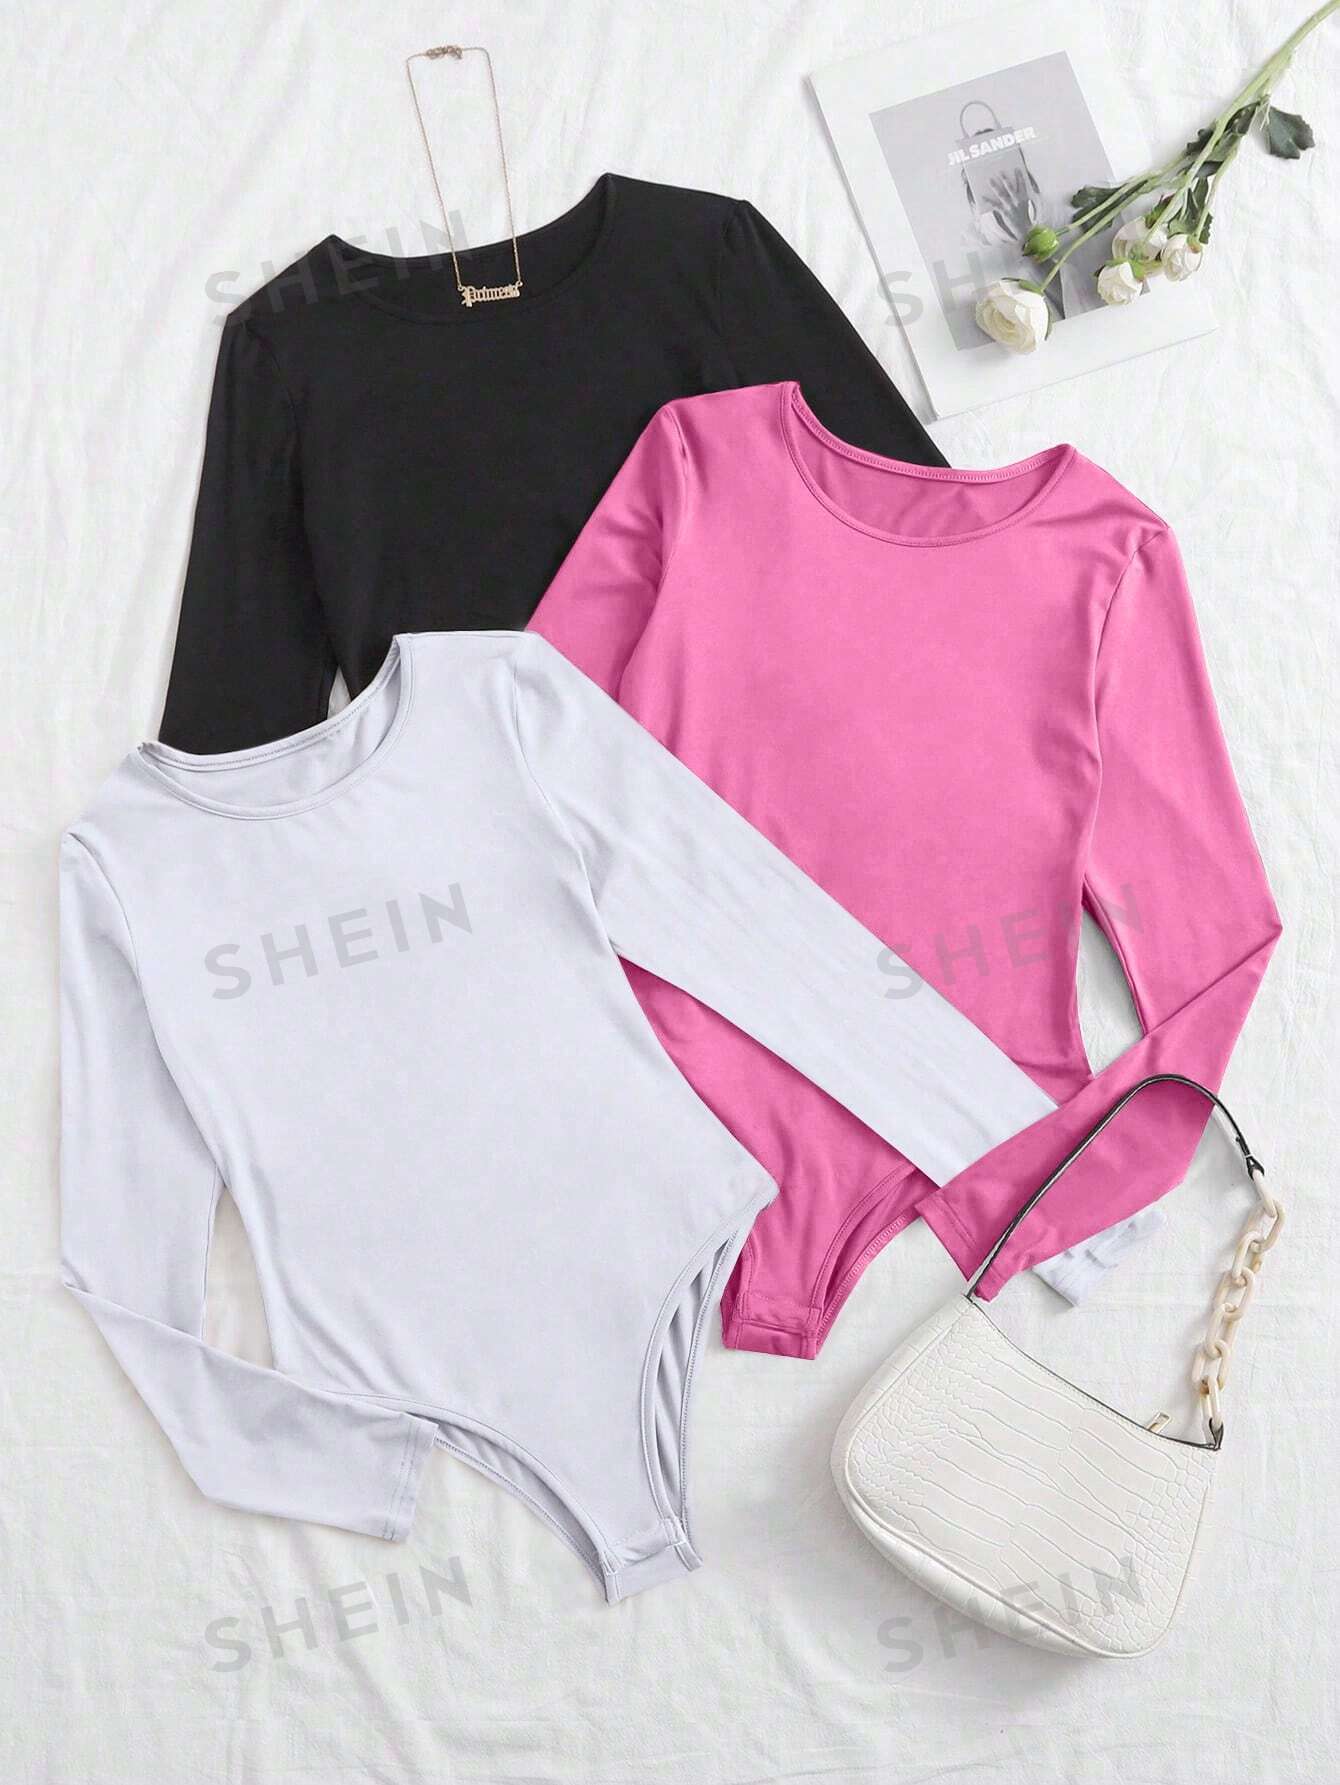 shein essnce трехцветное облегающее боди футболка с длинными рукавами многоцветный SHEIN Essnce Трехцветное облегающее боди-футболка с длинными рукавами, многоцветный